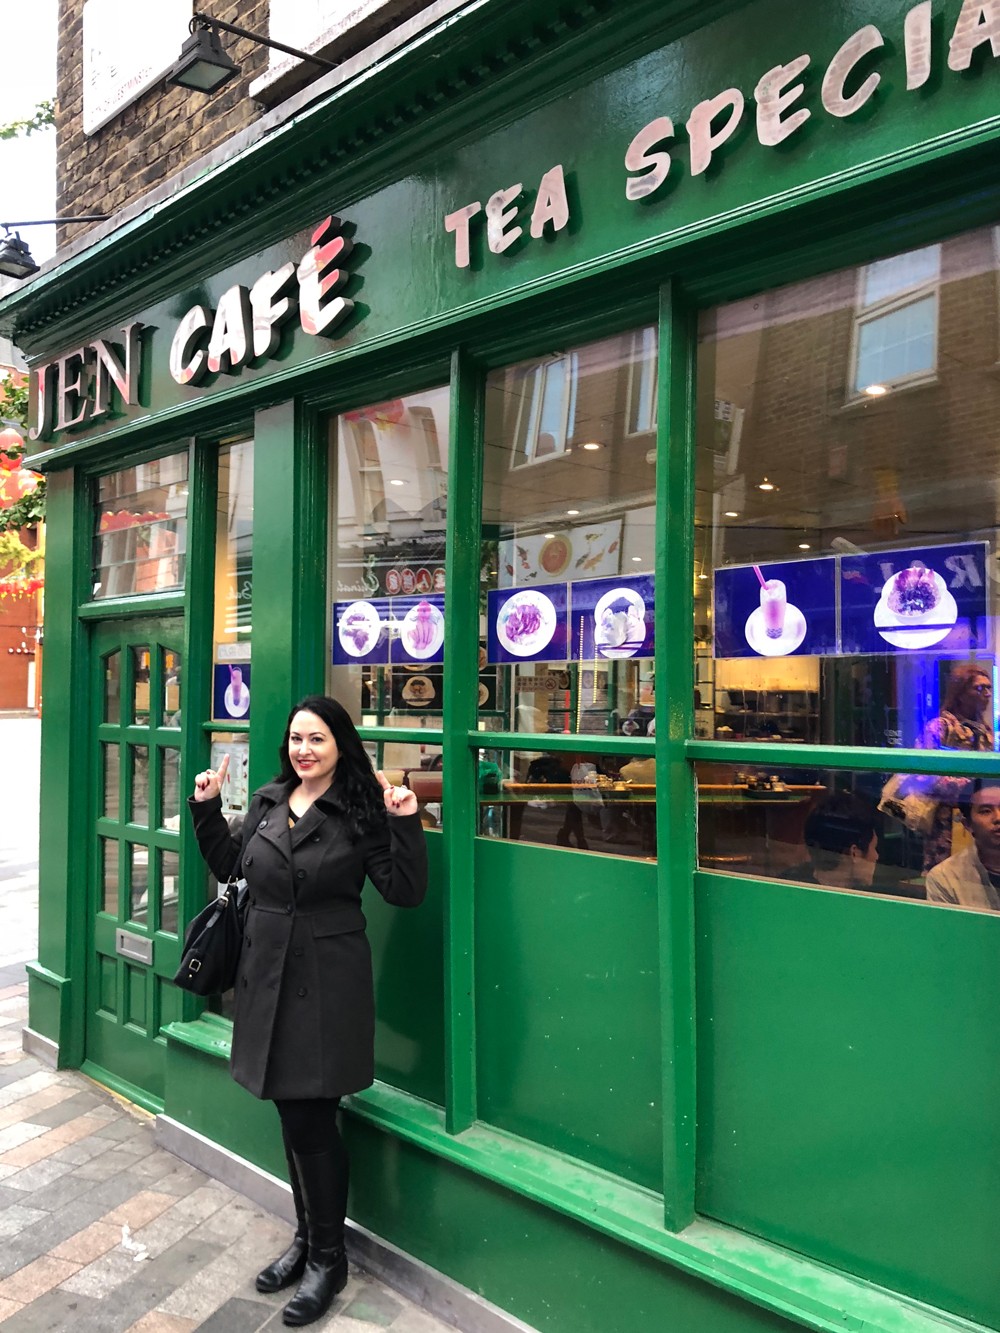 Jen Cafe - London Chinatown